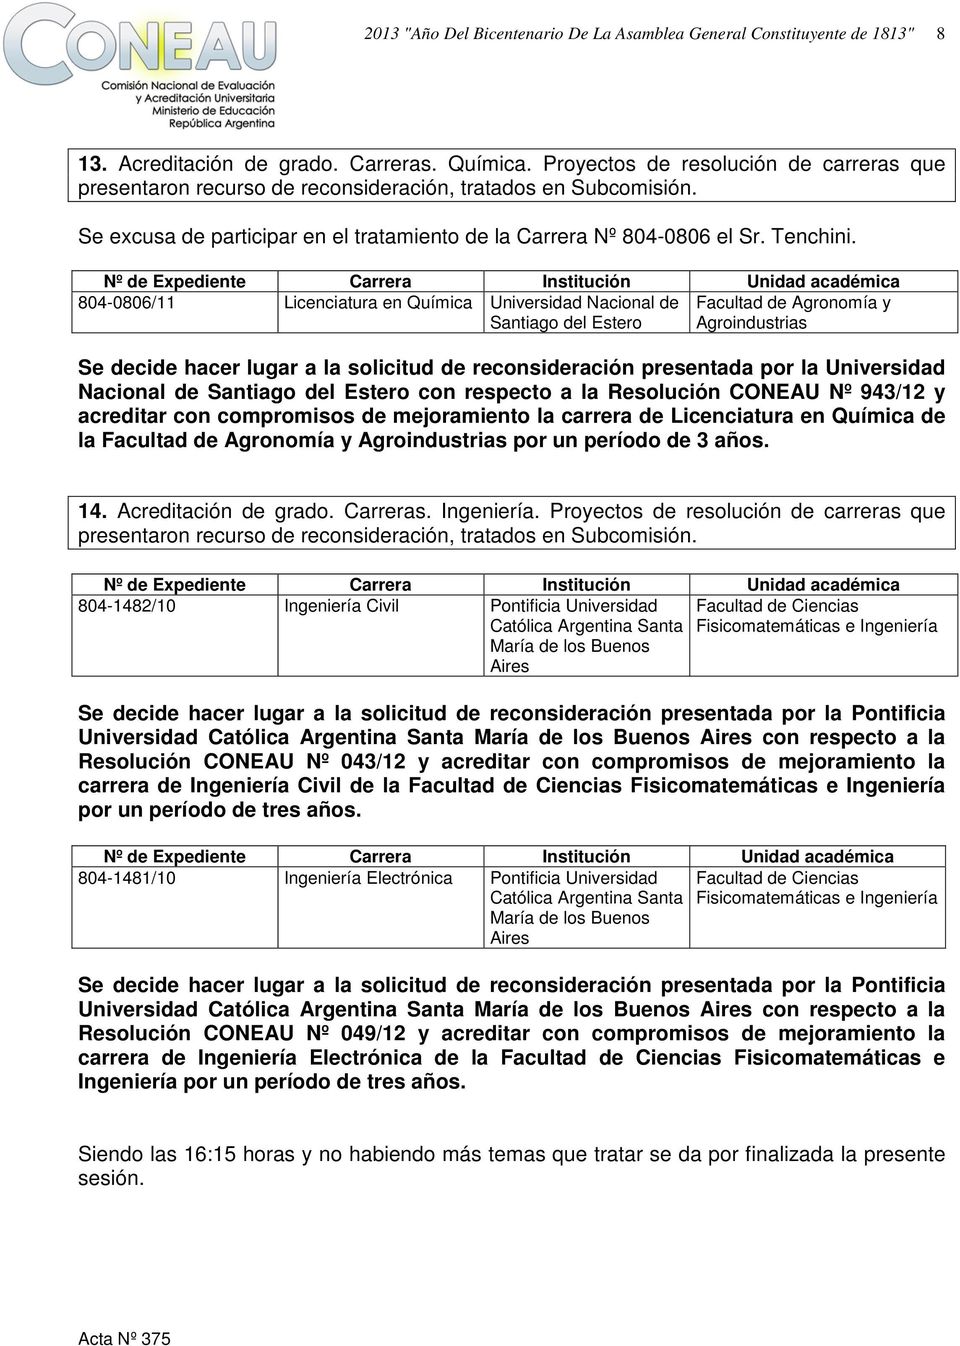 Expediente Carrera Institución Unidad 804-0806/11 Licenciatura en Química Nacional de Santiago del Estero Agronomía y Agroindustrias Se decide hacer lugar a la solicitud de reconsideración presentada